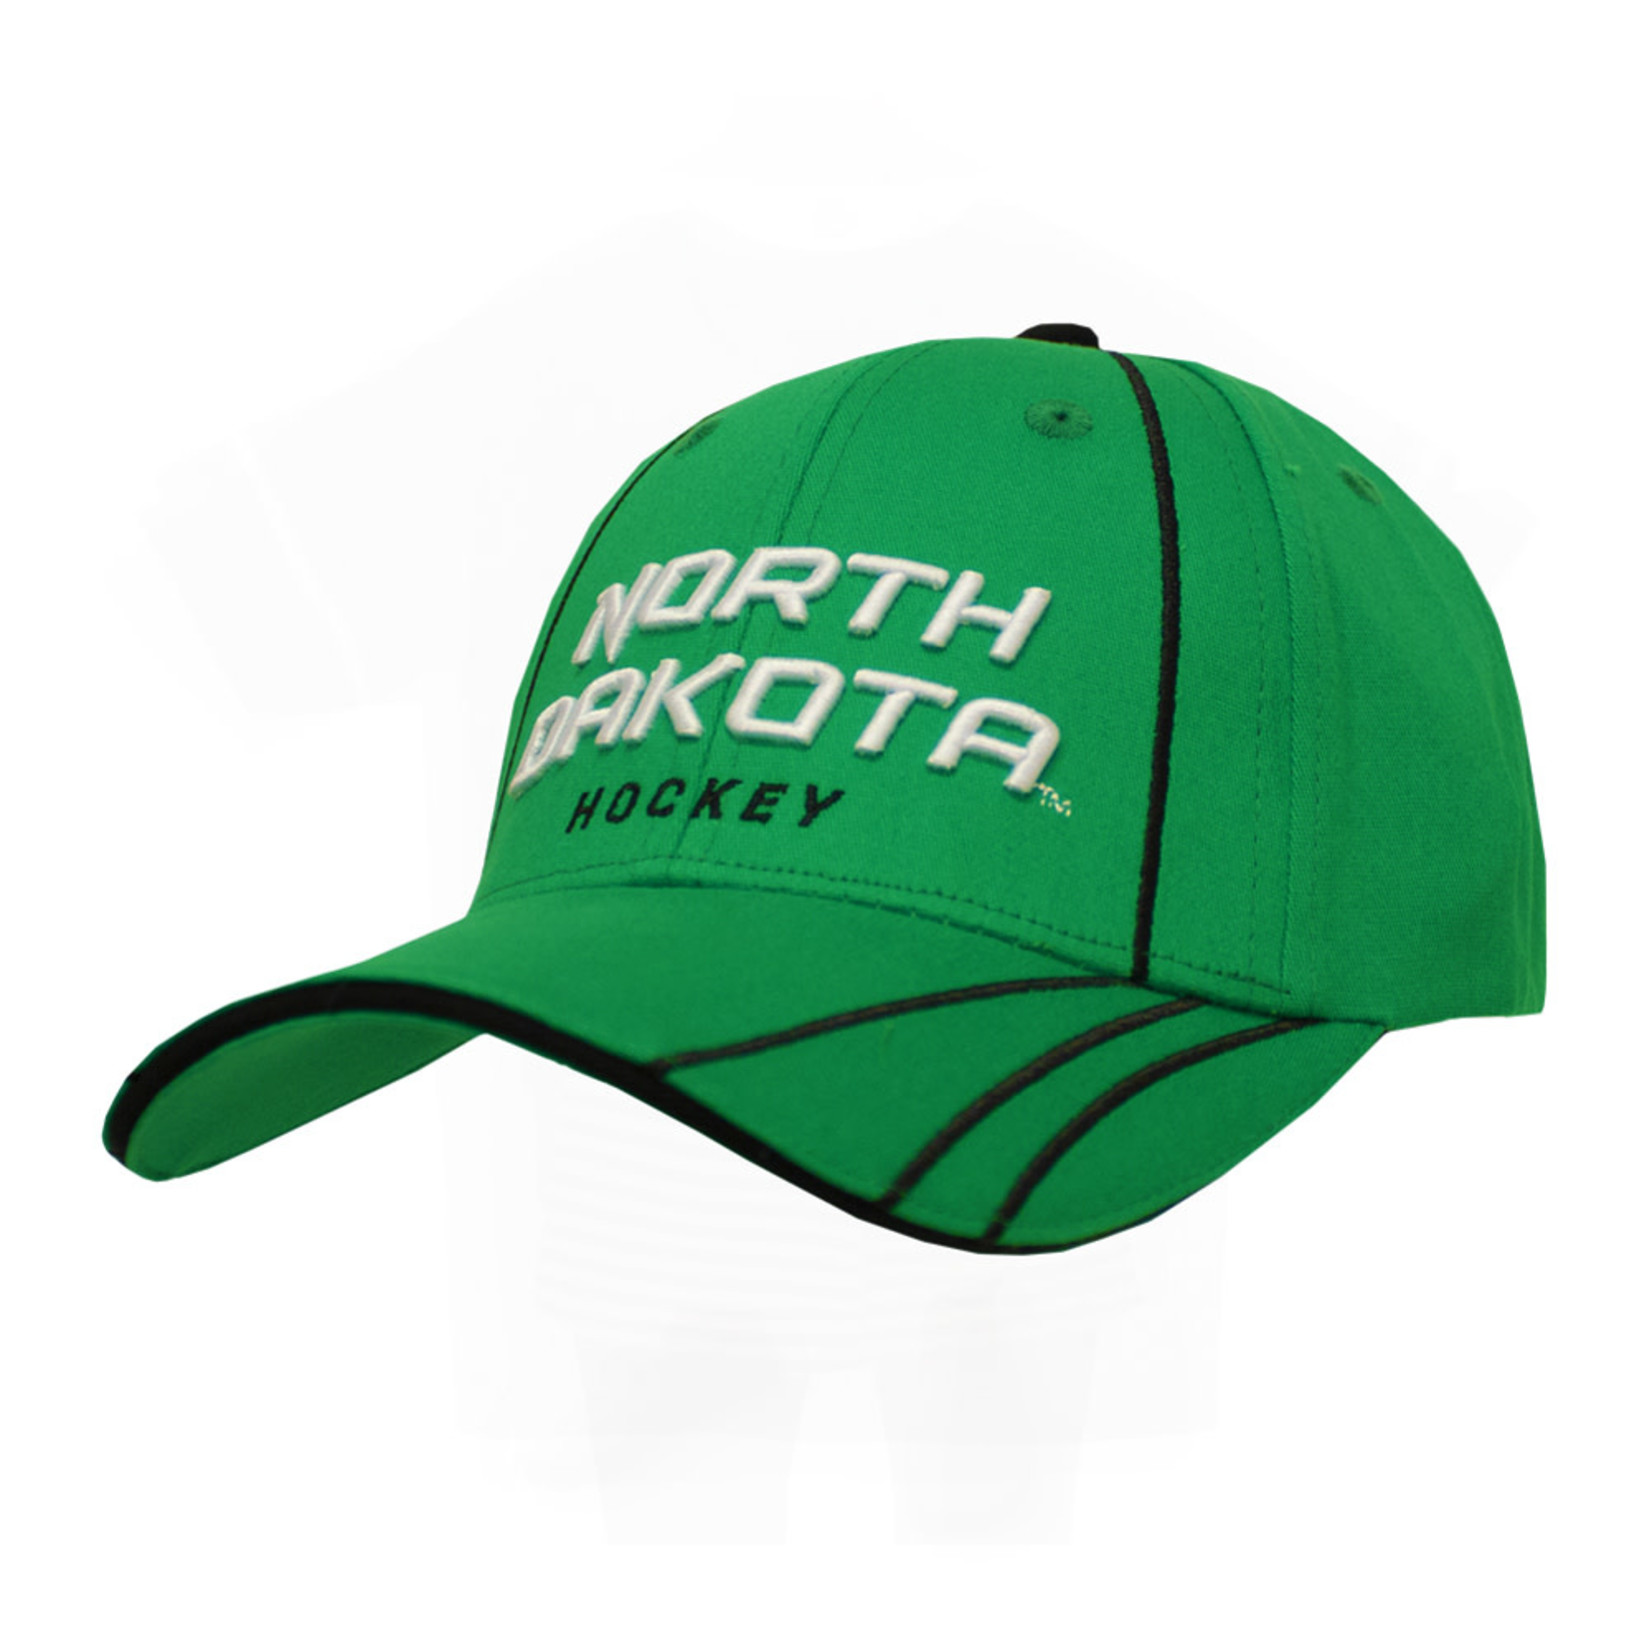 Franchise Club North Dakota Hockey Stripes Hat